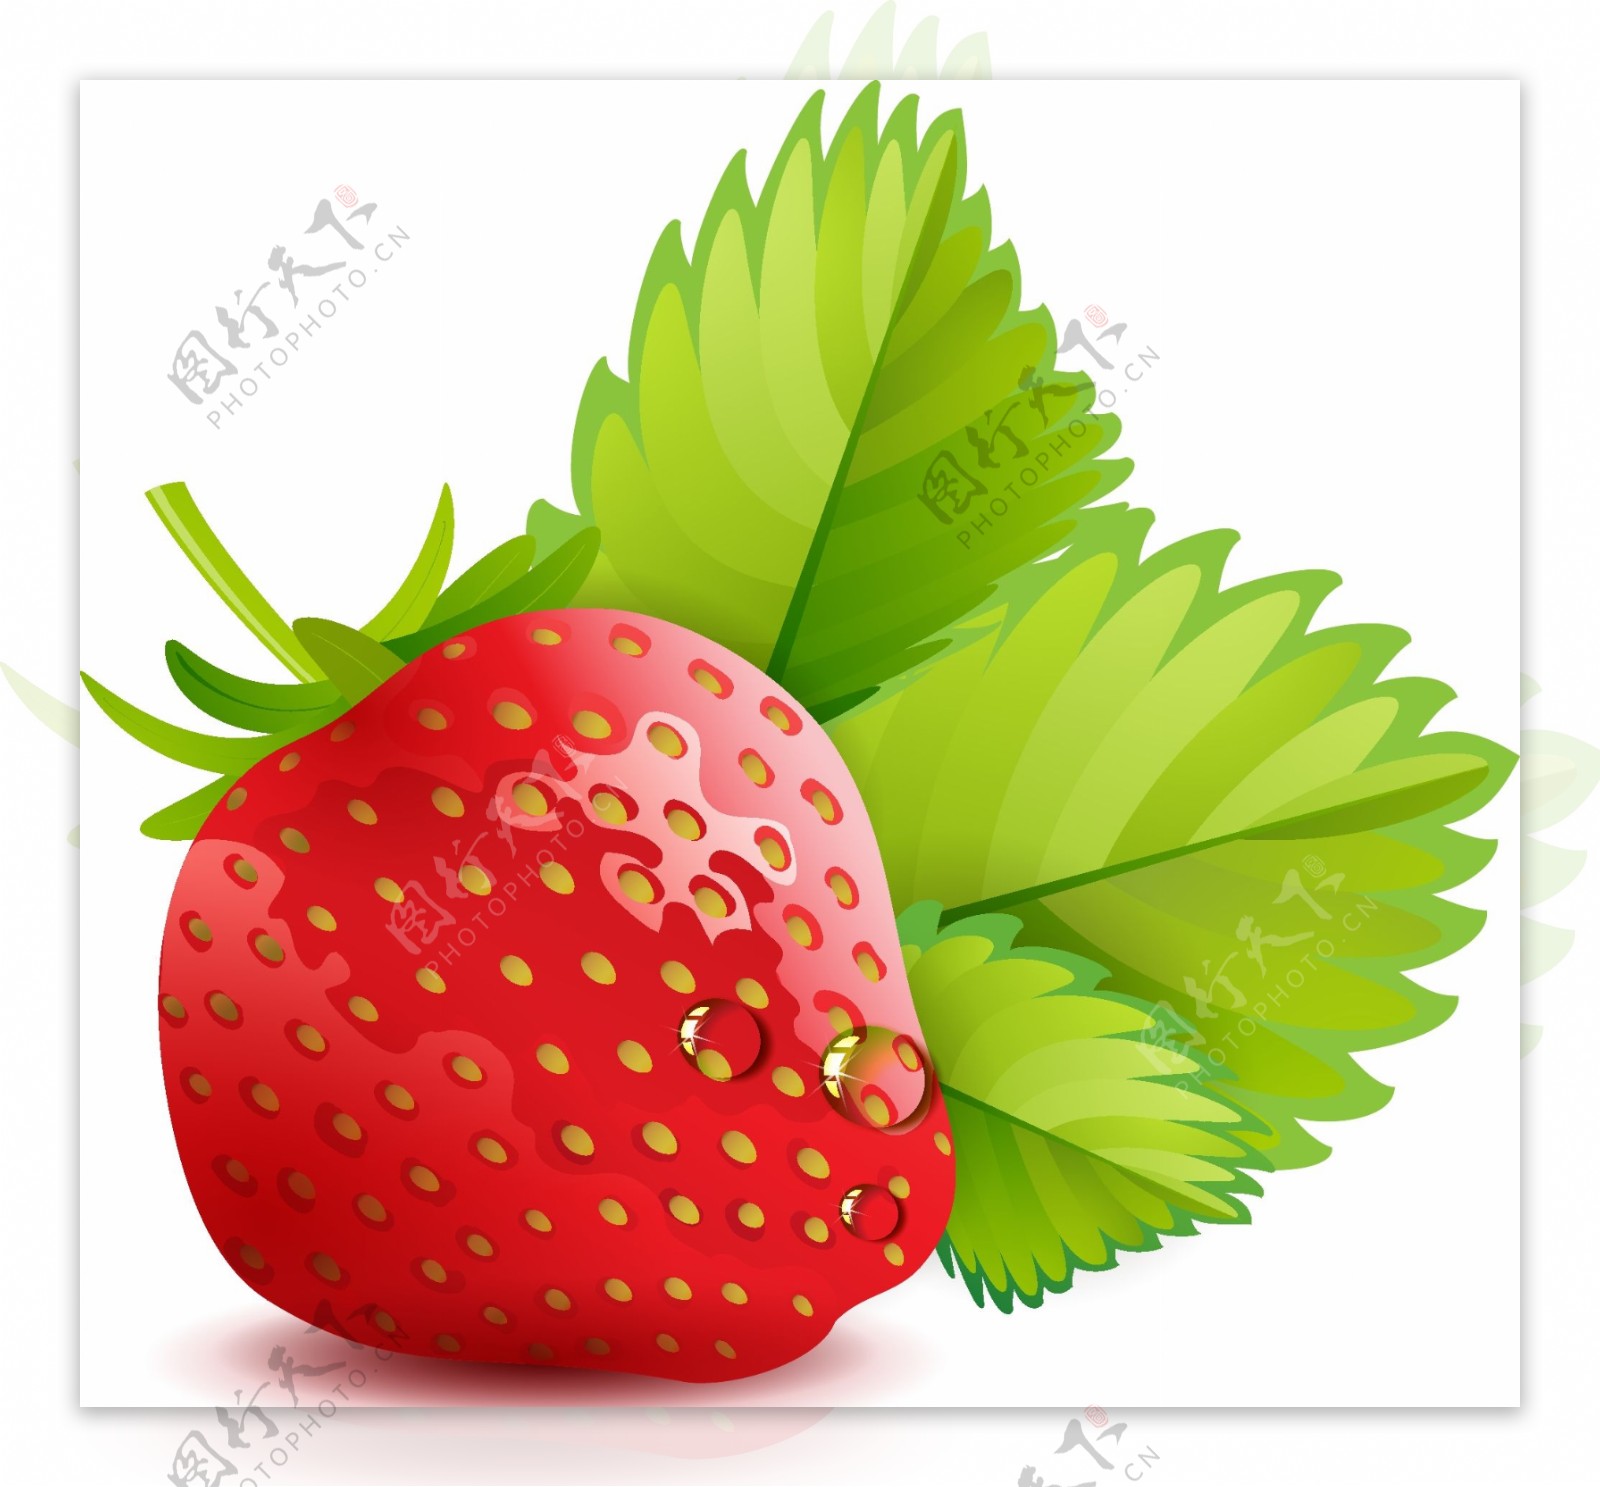 原创手绘一颗刚采摘的草莓